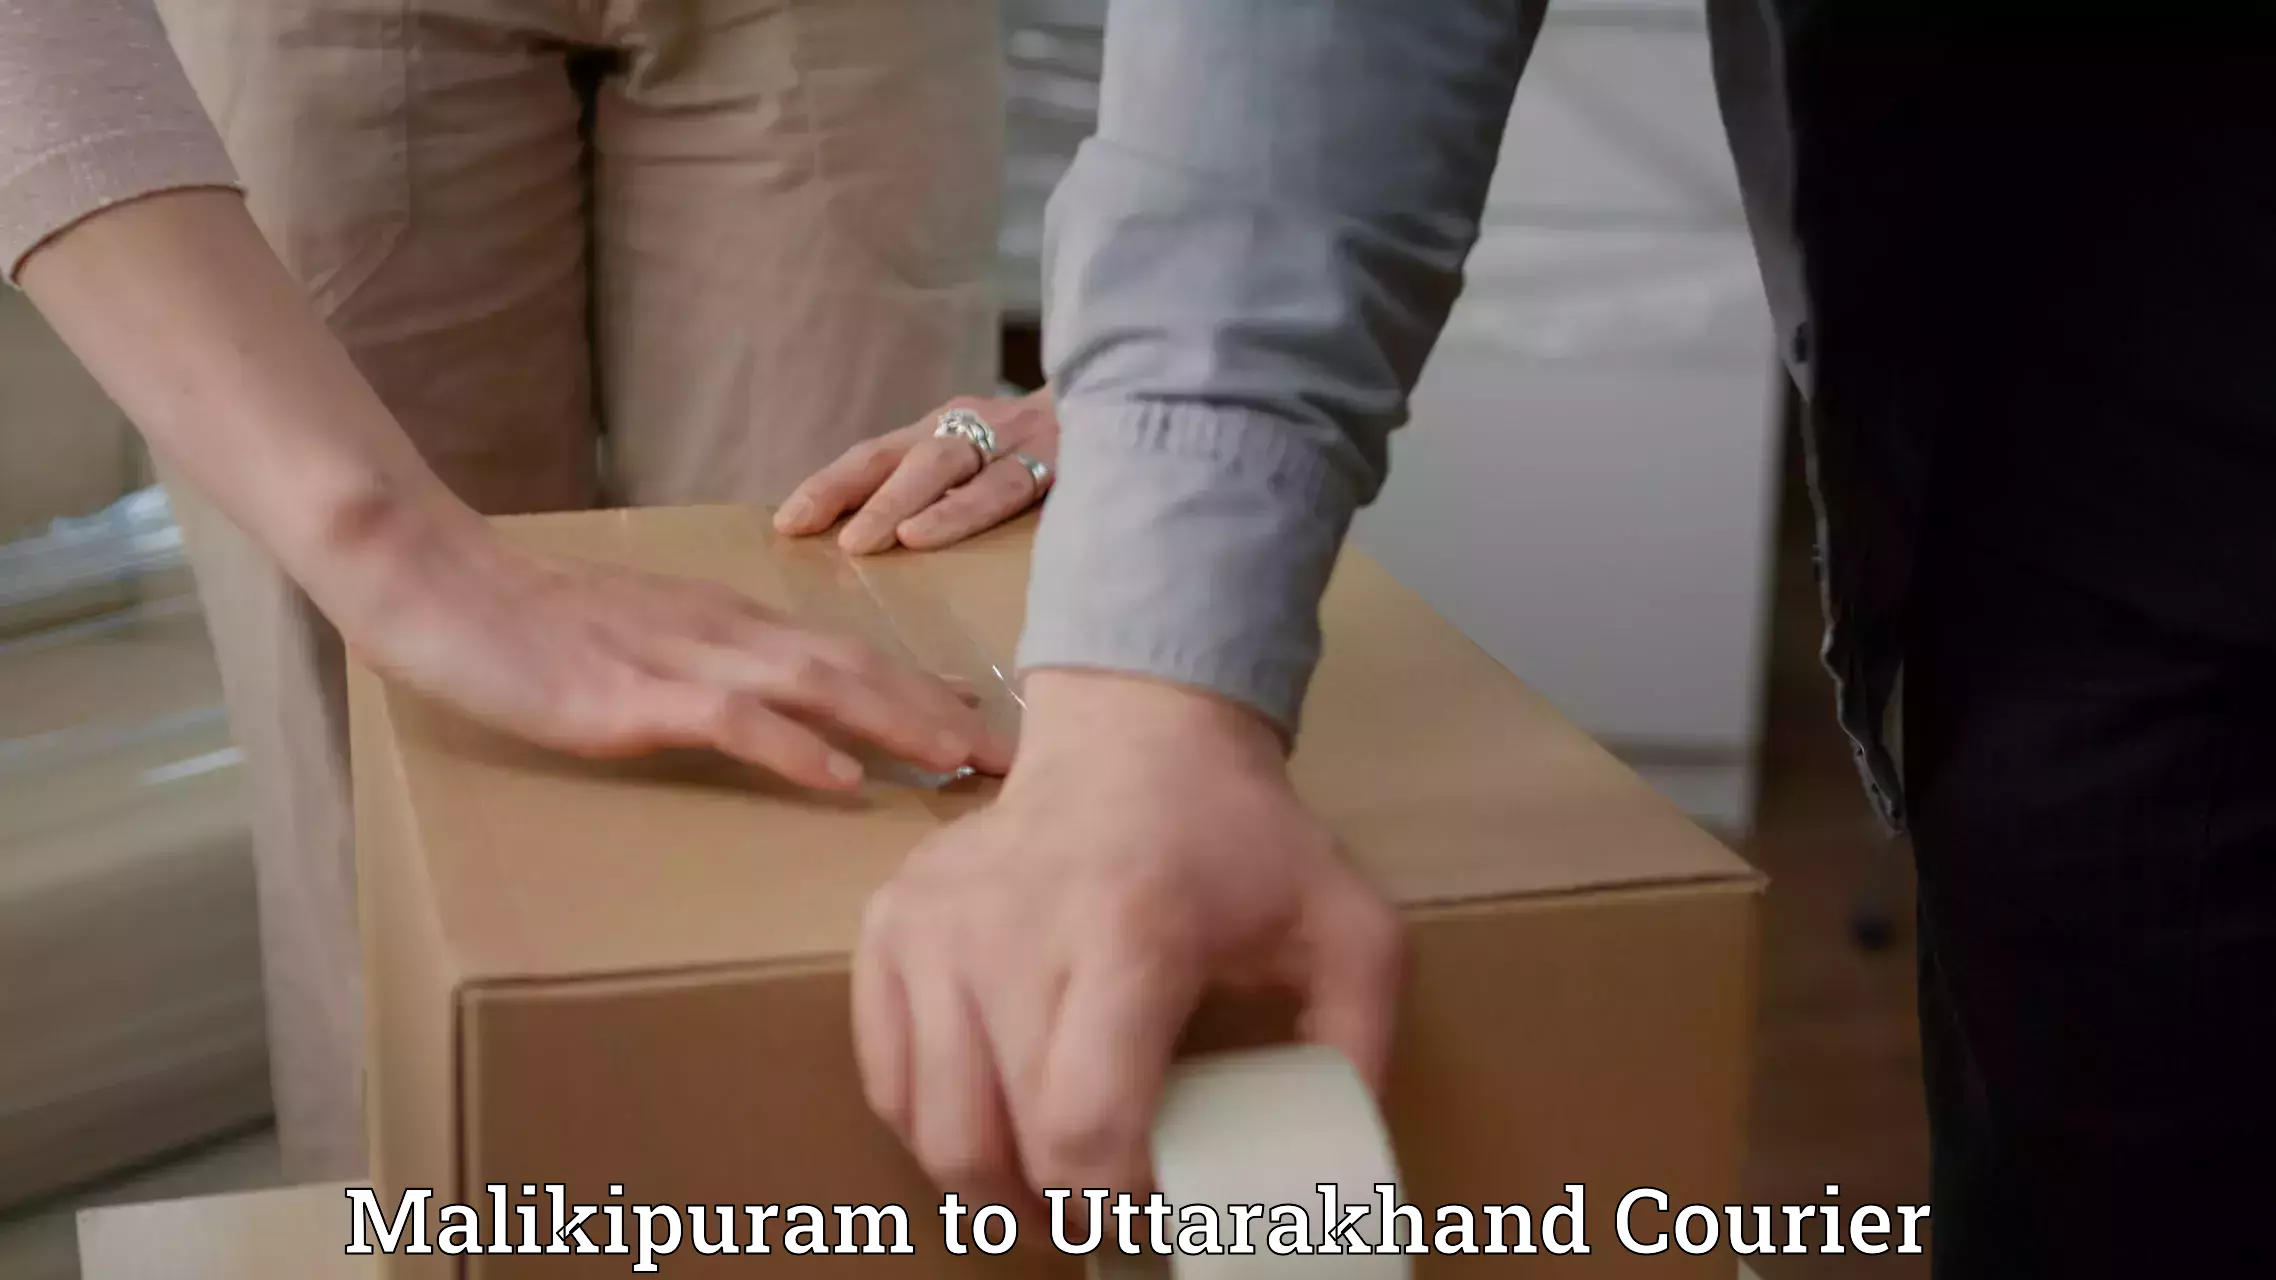 Punctual parcel services Malikipuram to Uttarakhand